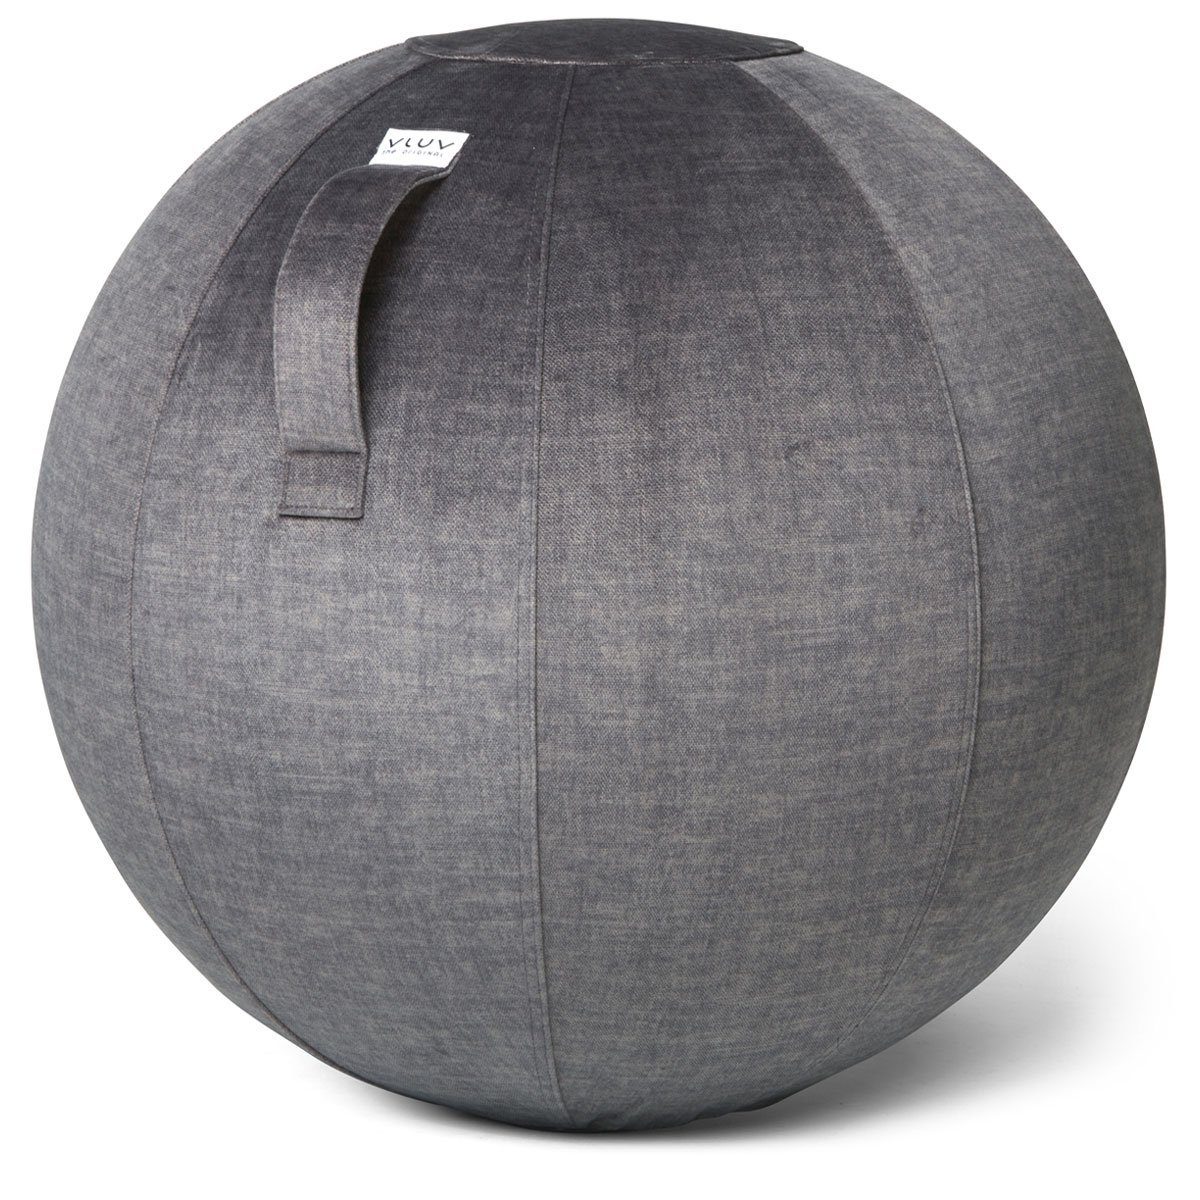 VLUV Sitzball BOL VARM Stoff-Sitzball in Anthracite (Dunkelgrau), Ø 60cm-65cm, Samt-Möbelbezugstoff - robust, formstabil, mit Tragegriff und Bodenring